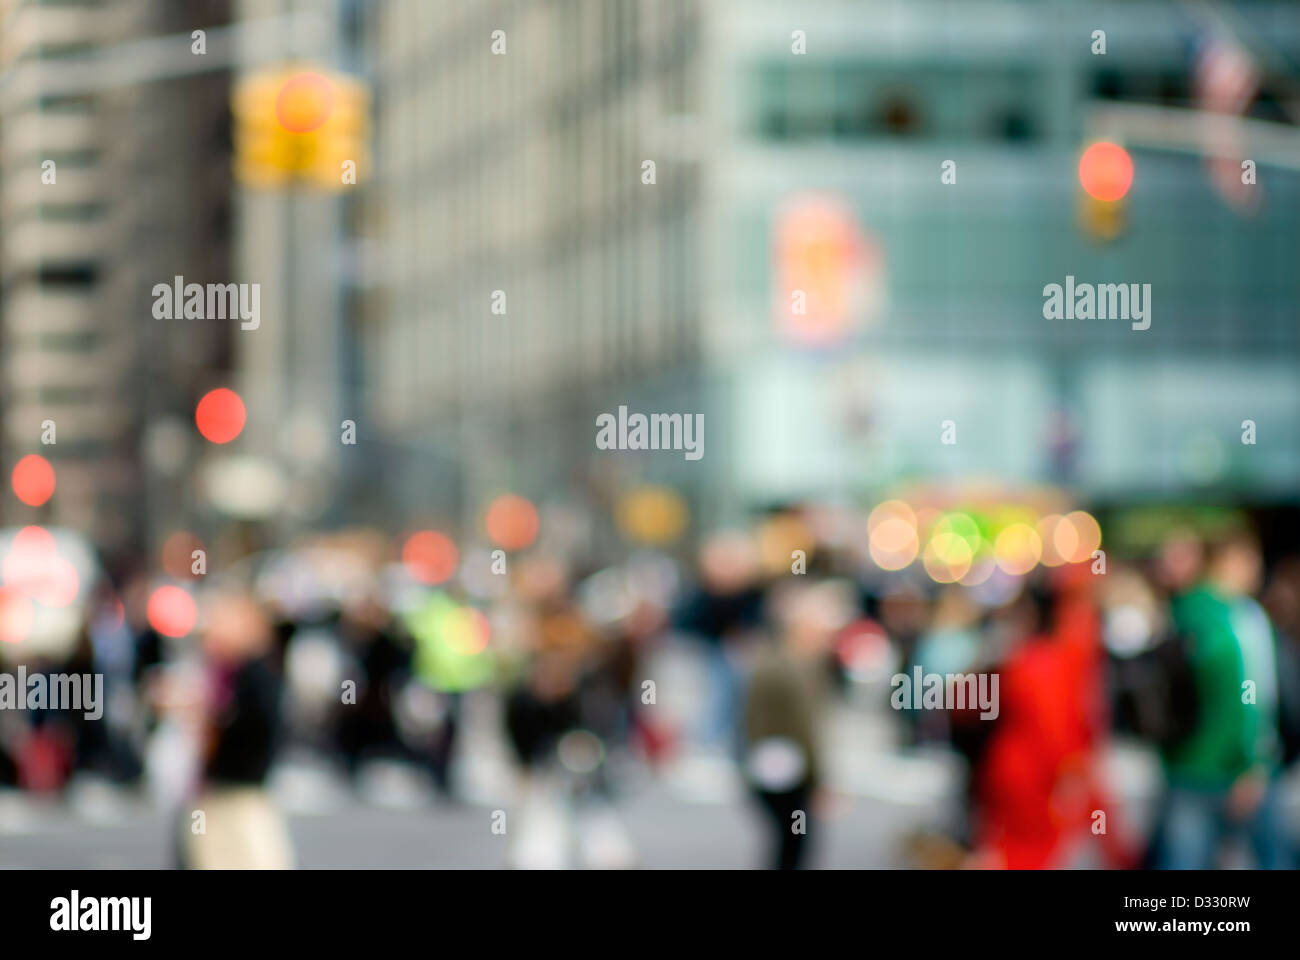 Abstract scena urbana con pedoni e la gente di New York City. Foto Stock